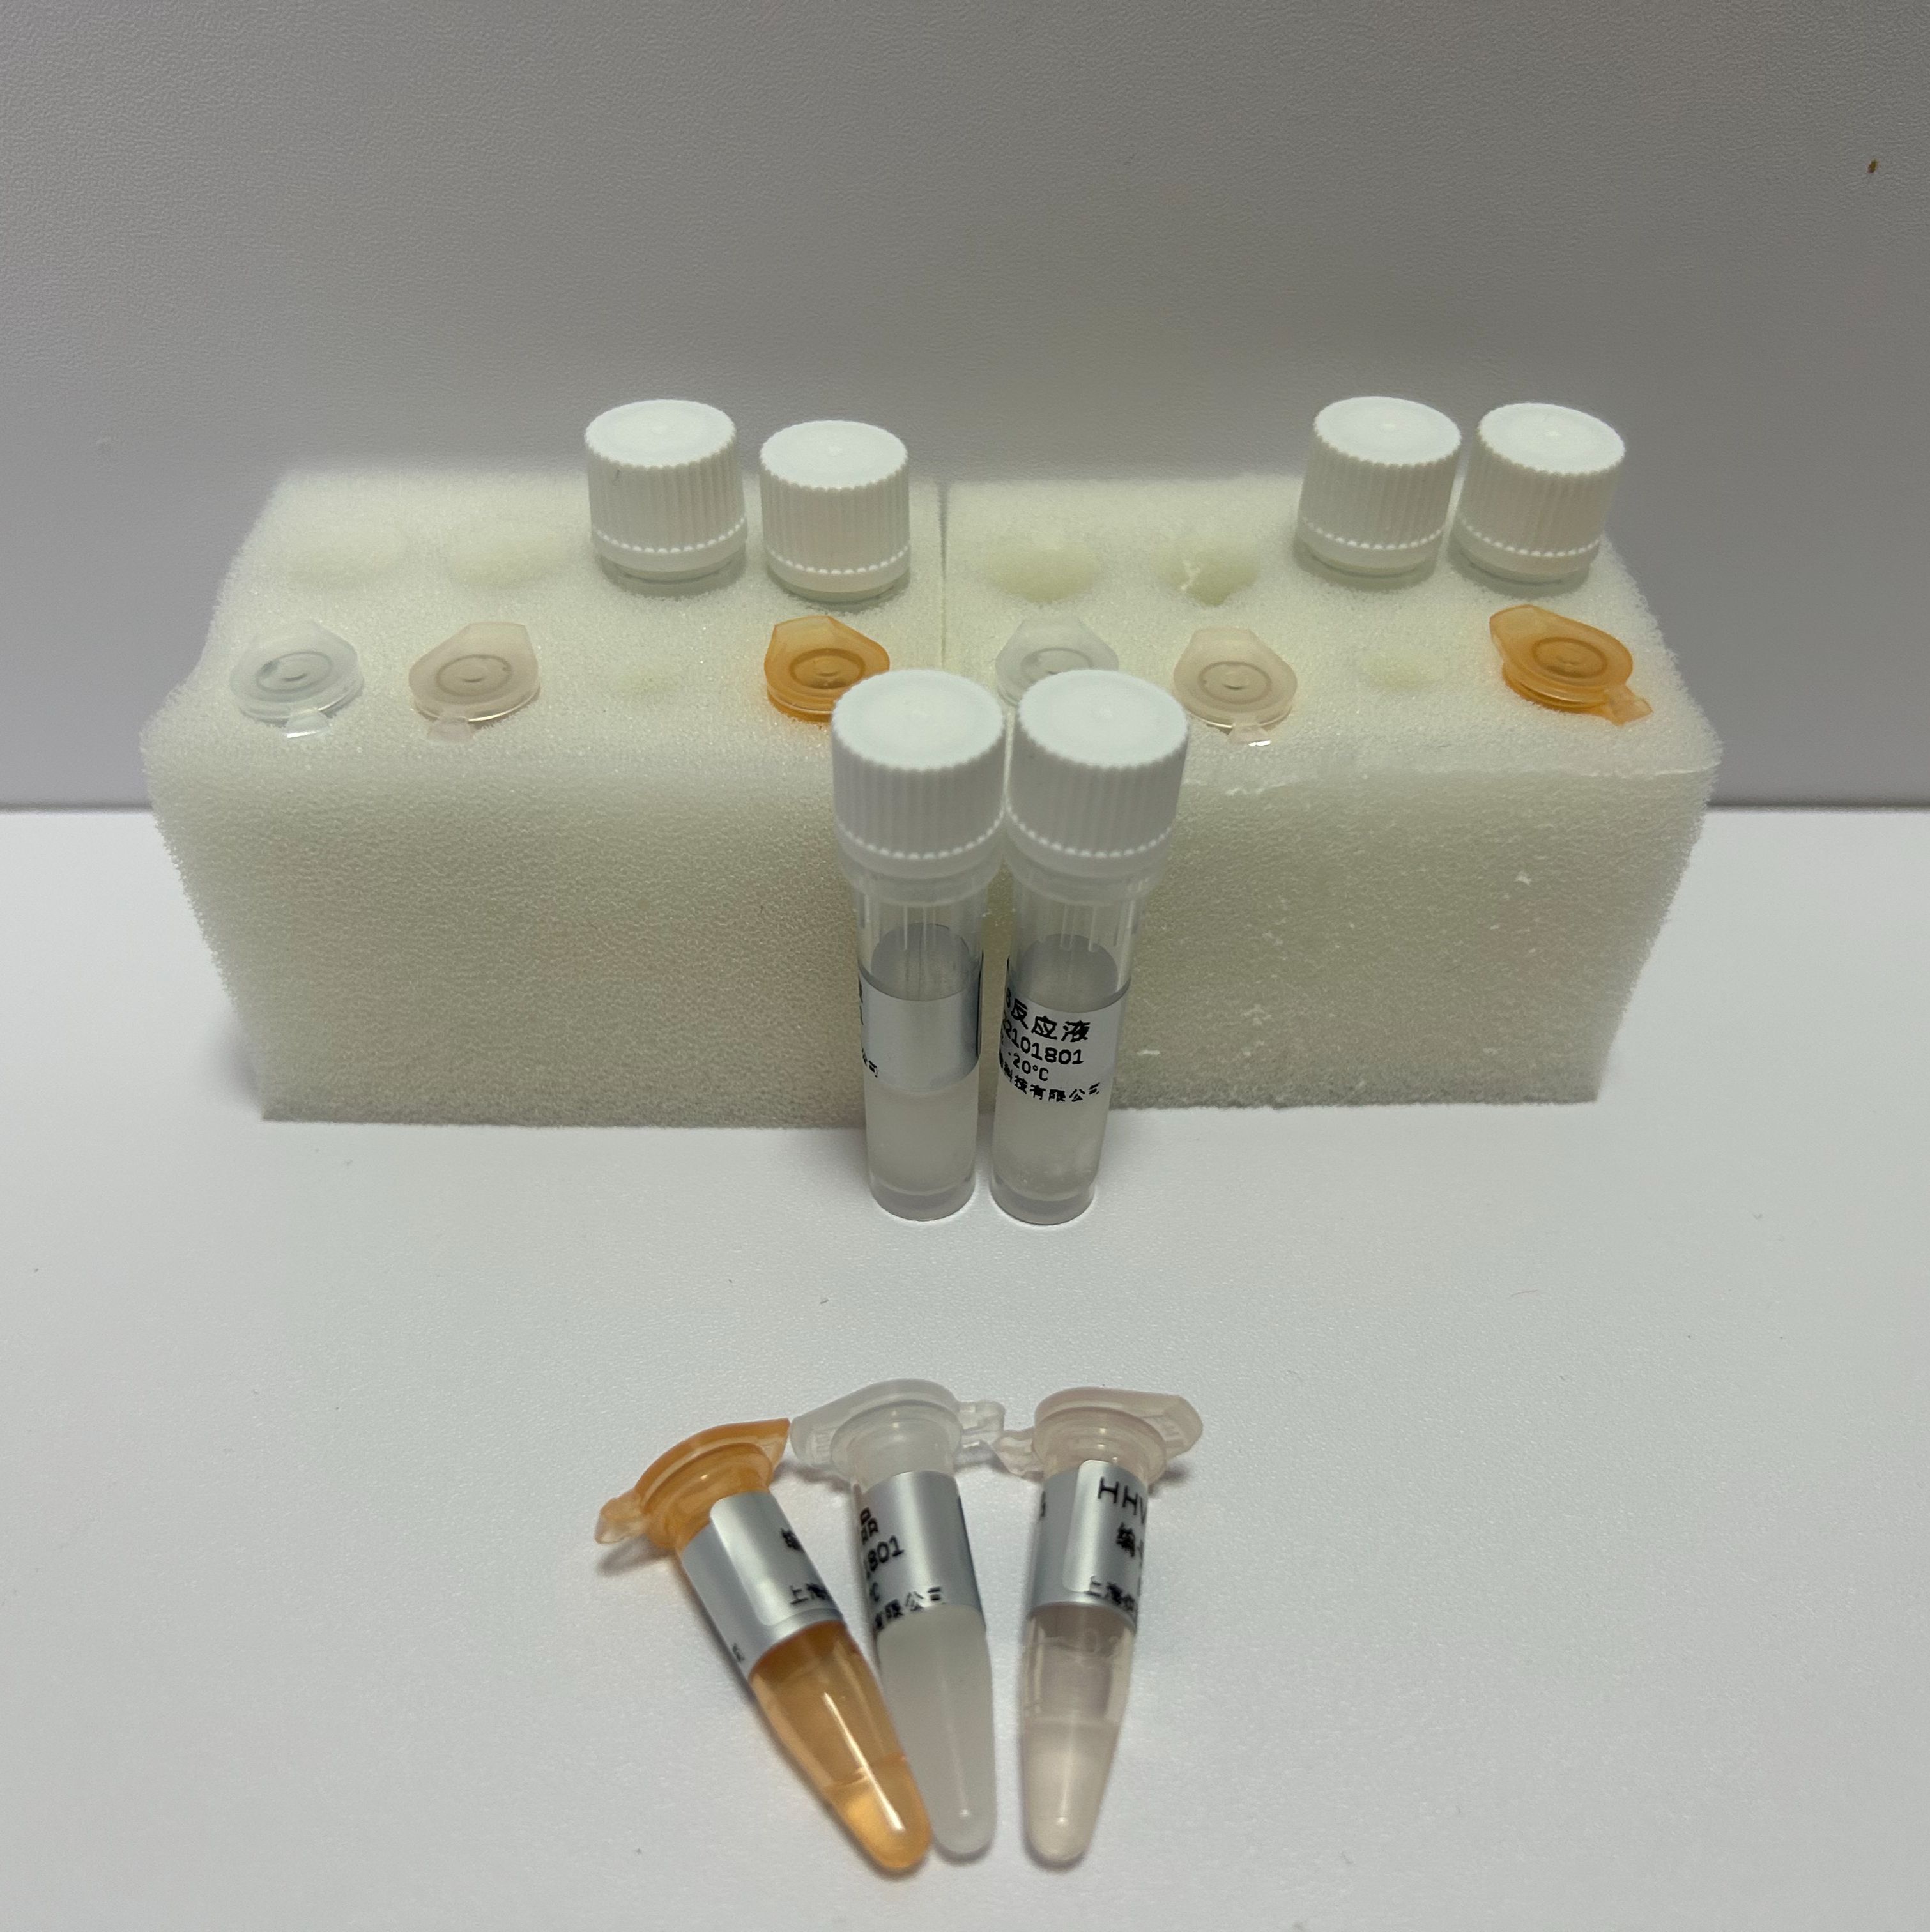 马胃葡萄球菌染料法荧光定量PCR试剂盒